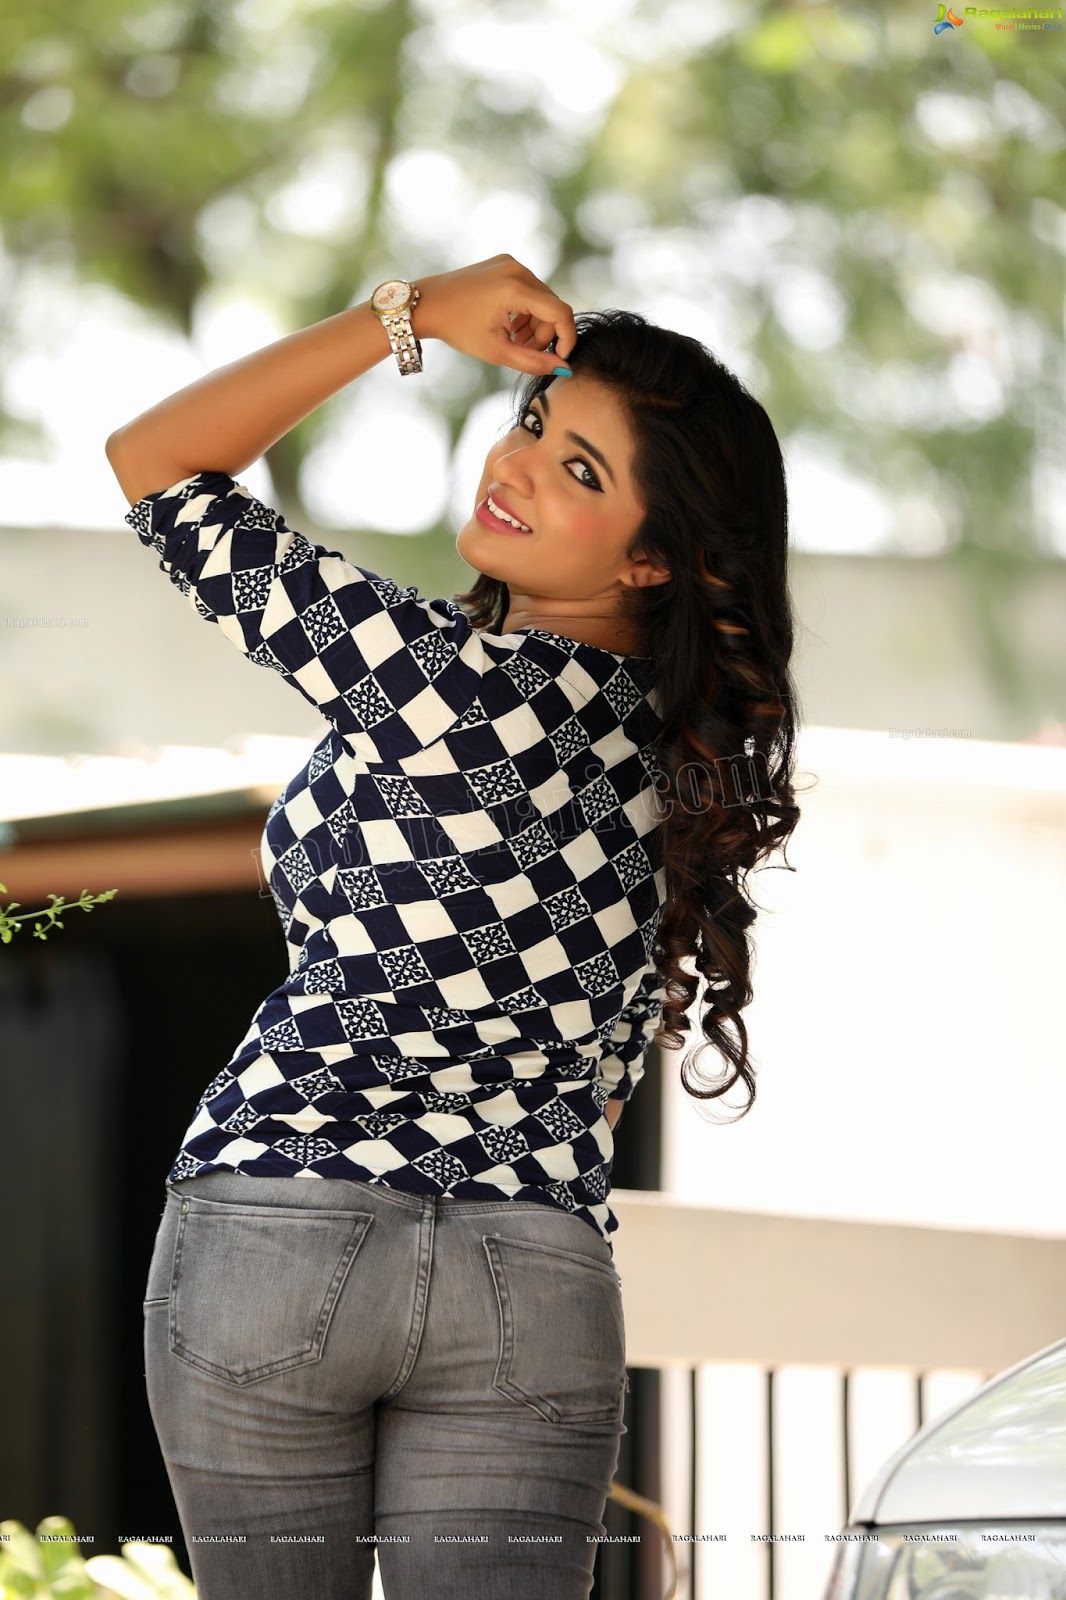 Telugu Actress Hot Photos: Actress Neha in Tight Jeans